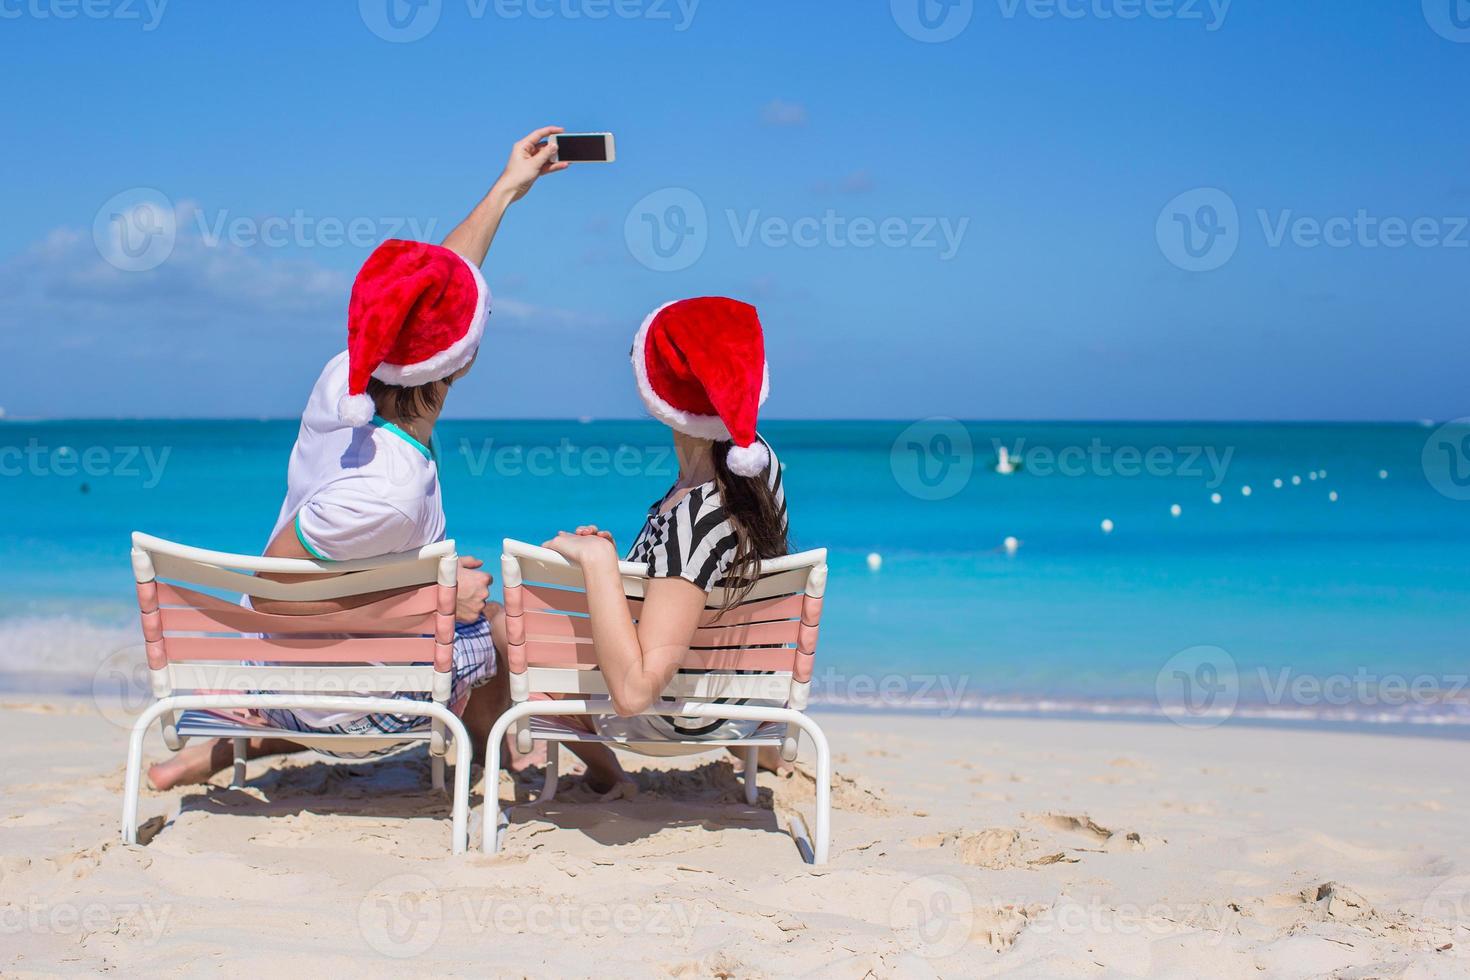 joven pareja feliz con sombreros rojos de santa tomando una foto en el teléfono celular